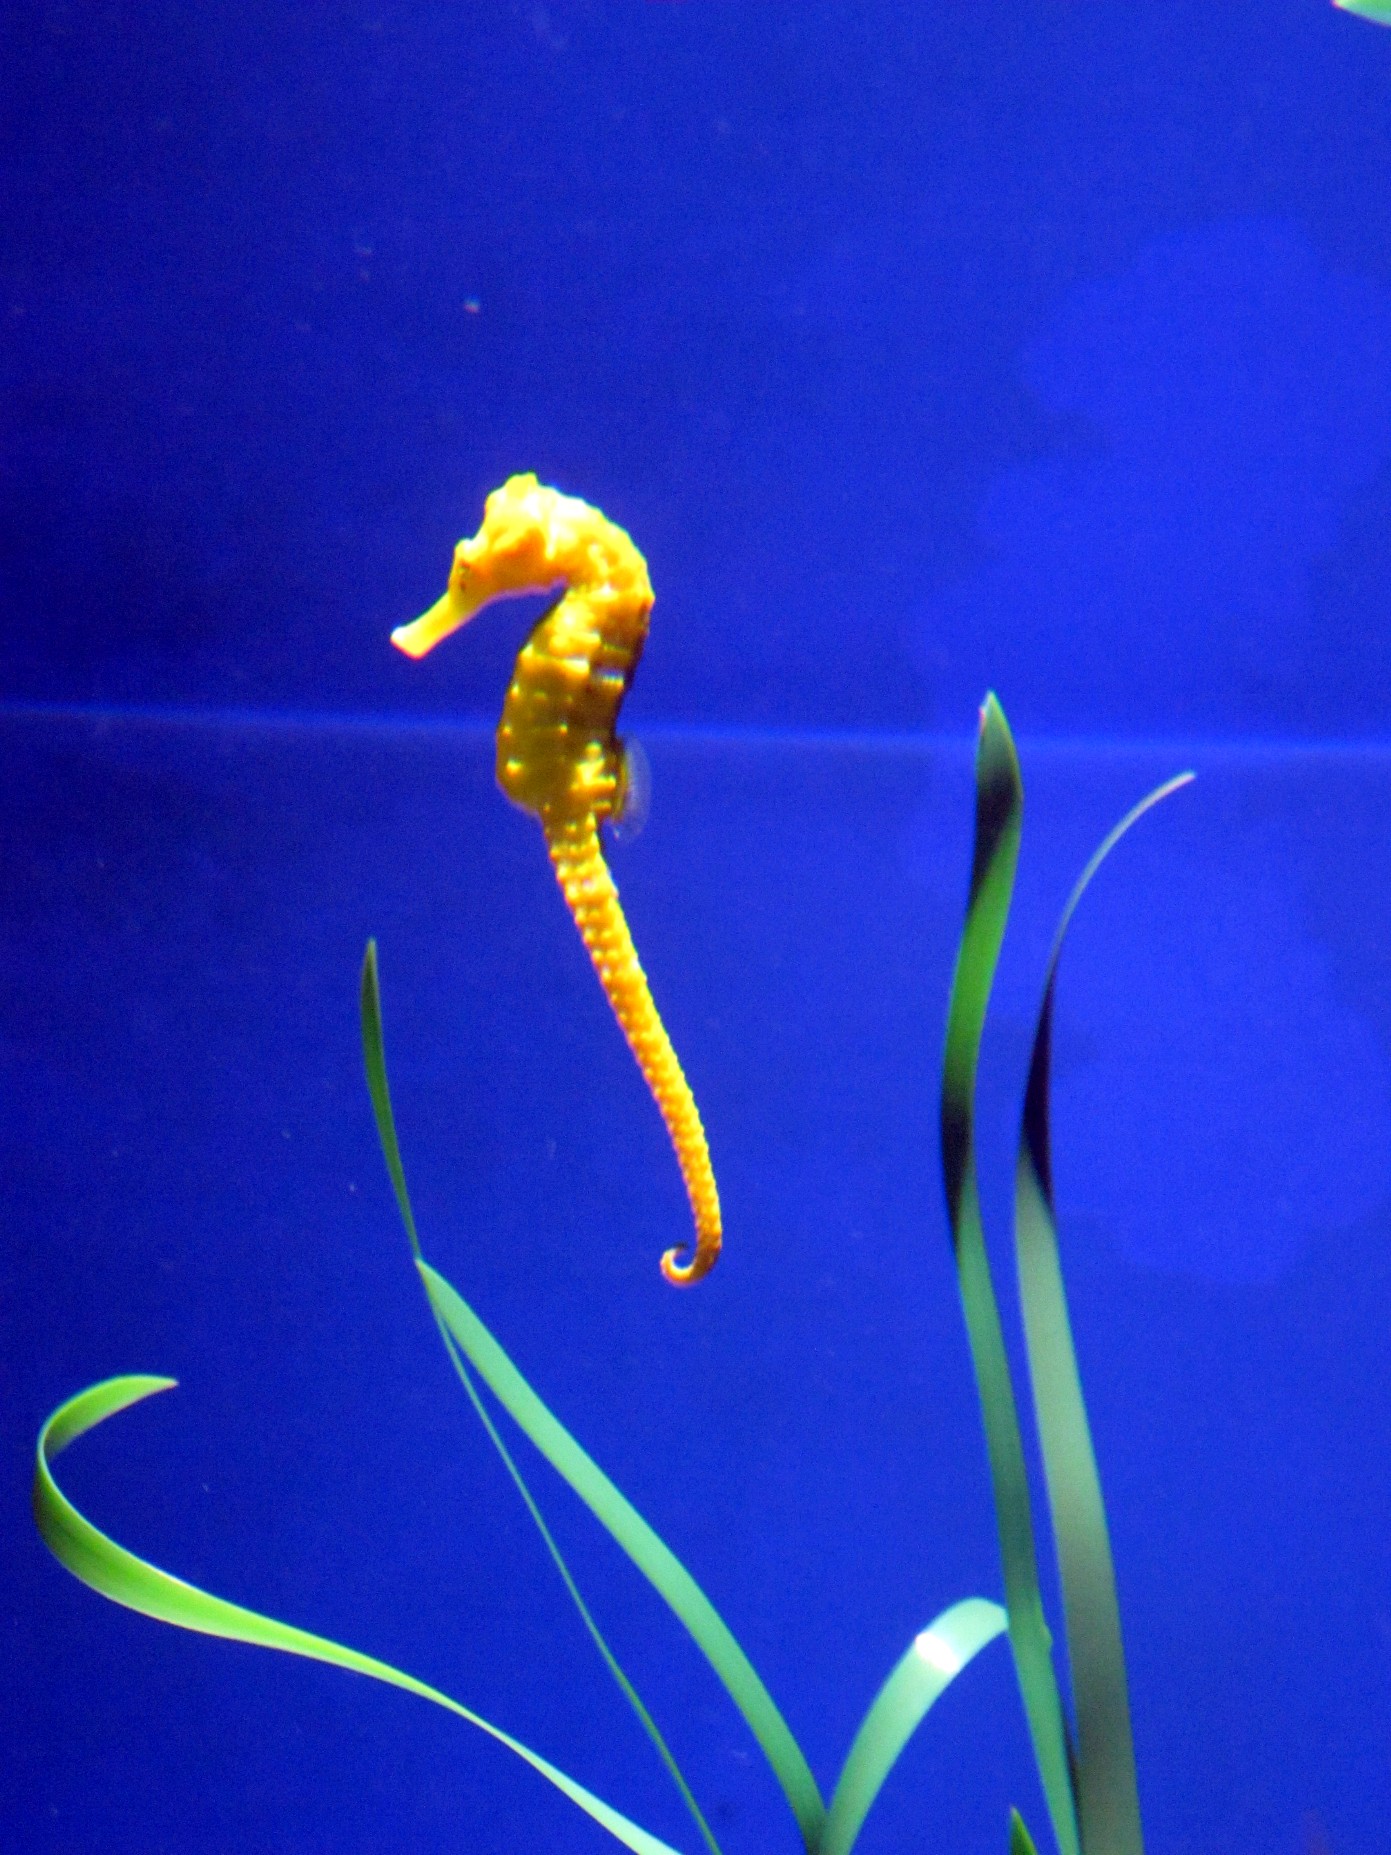 a yellow seahorse swimming through a blue aquarium